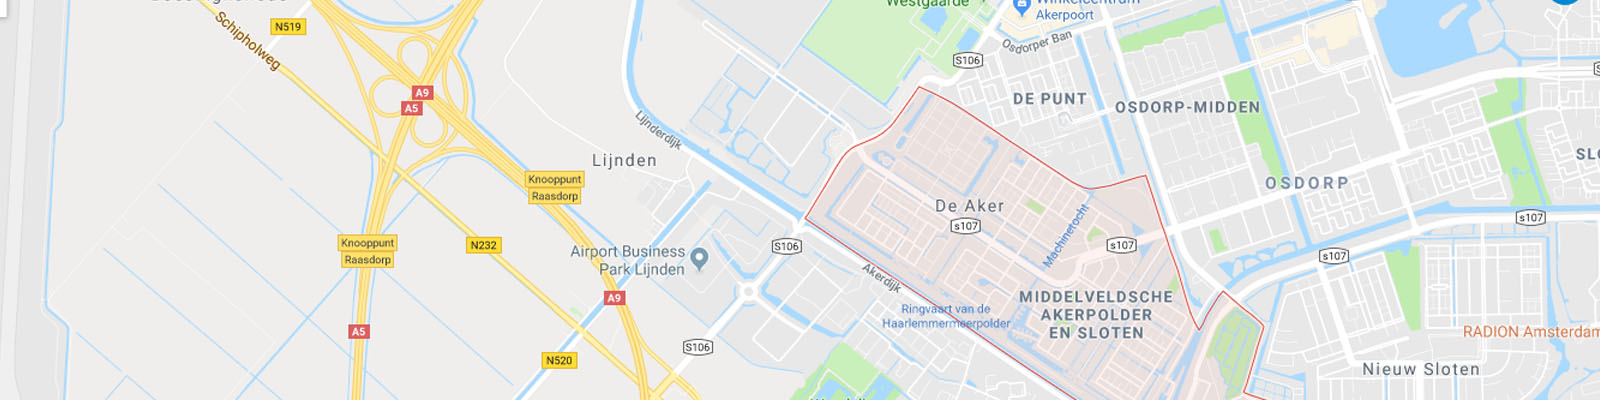 kaart Amsterdam